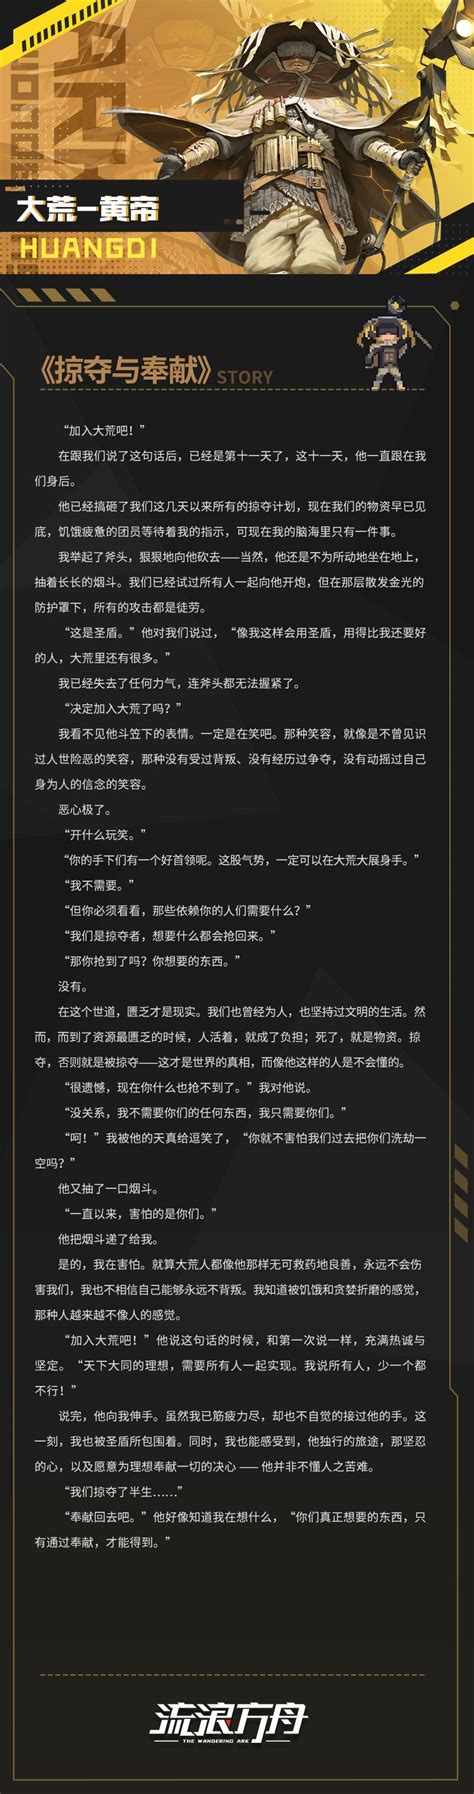 超凡者档案：黄帝人物曝光 - 流浪方舟资讯-小米游戏中心